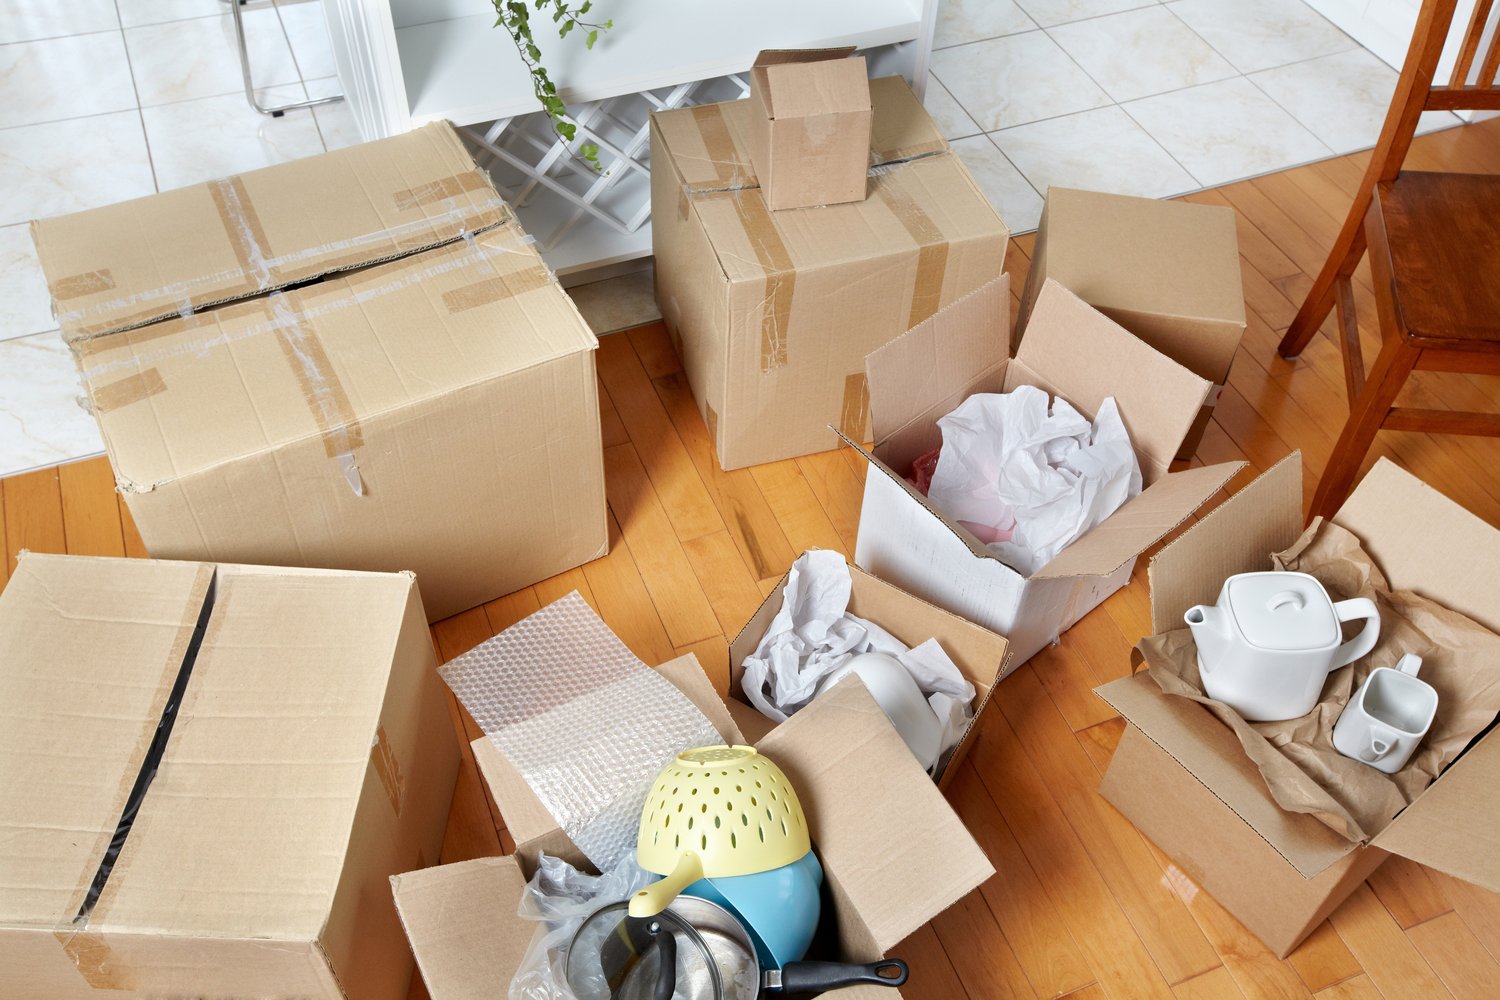 Package items. Упаковка вещей для переезда. Коробки для переезда. Вещи в коробках. Картонные коробки с вещами.